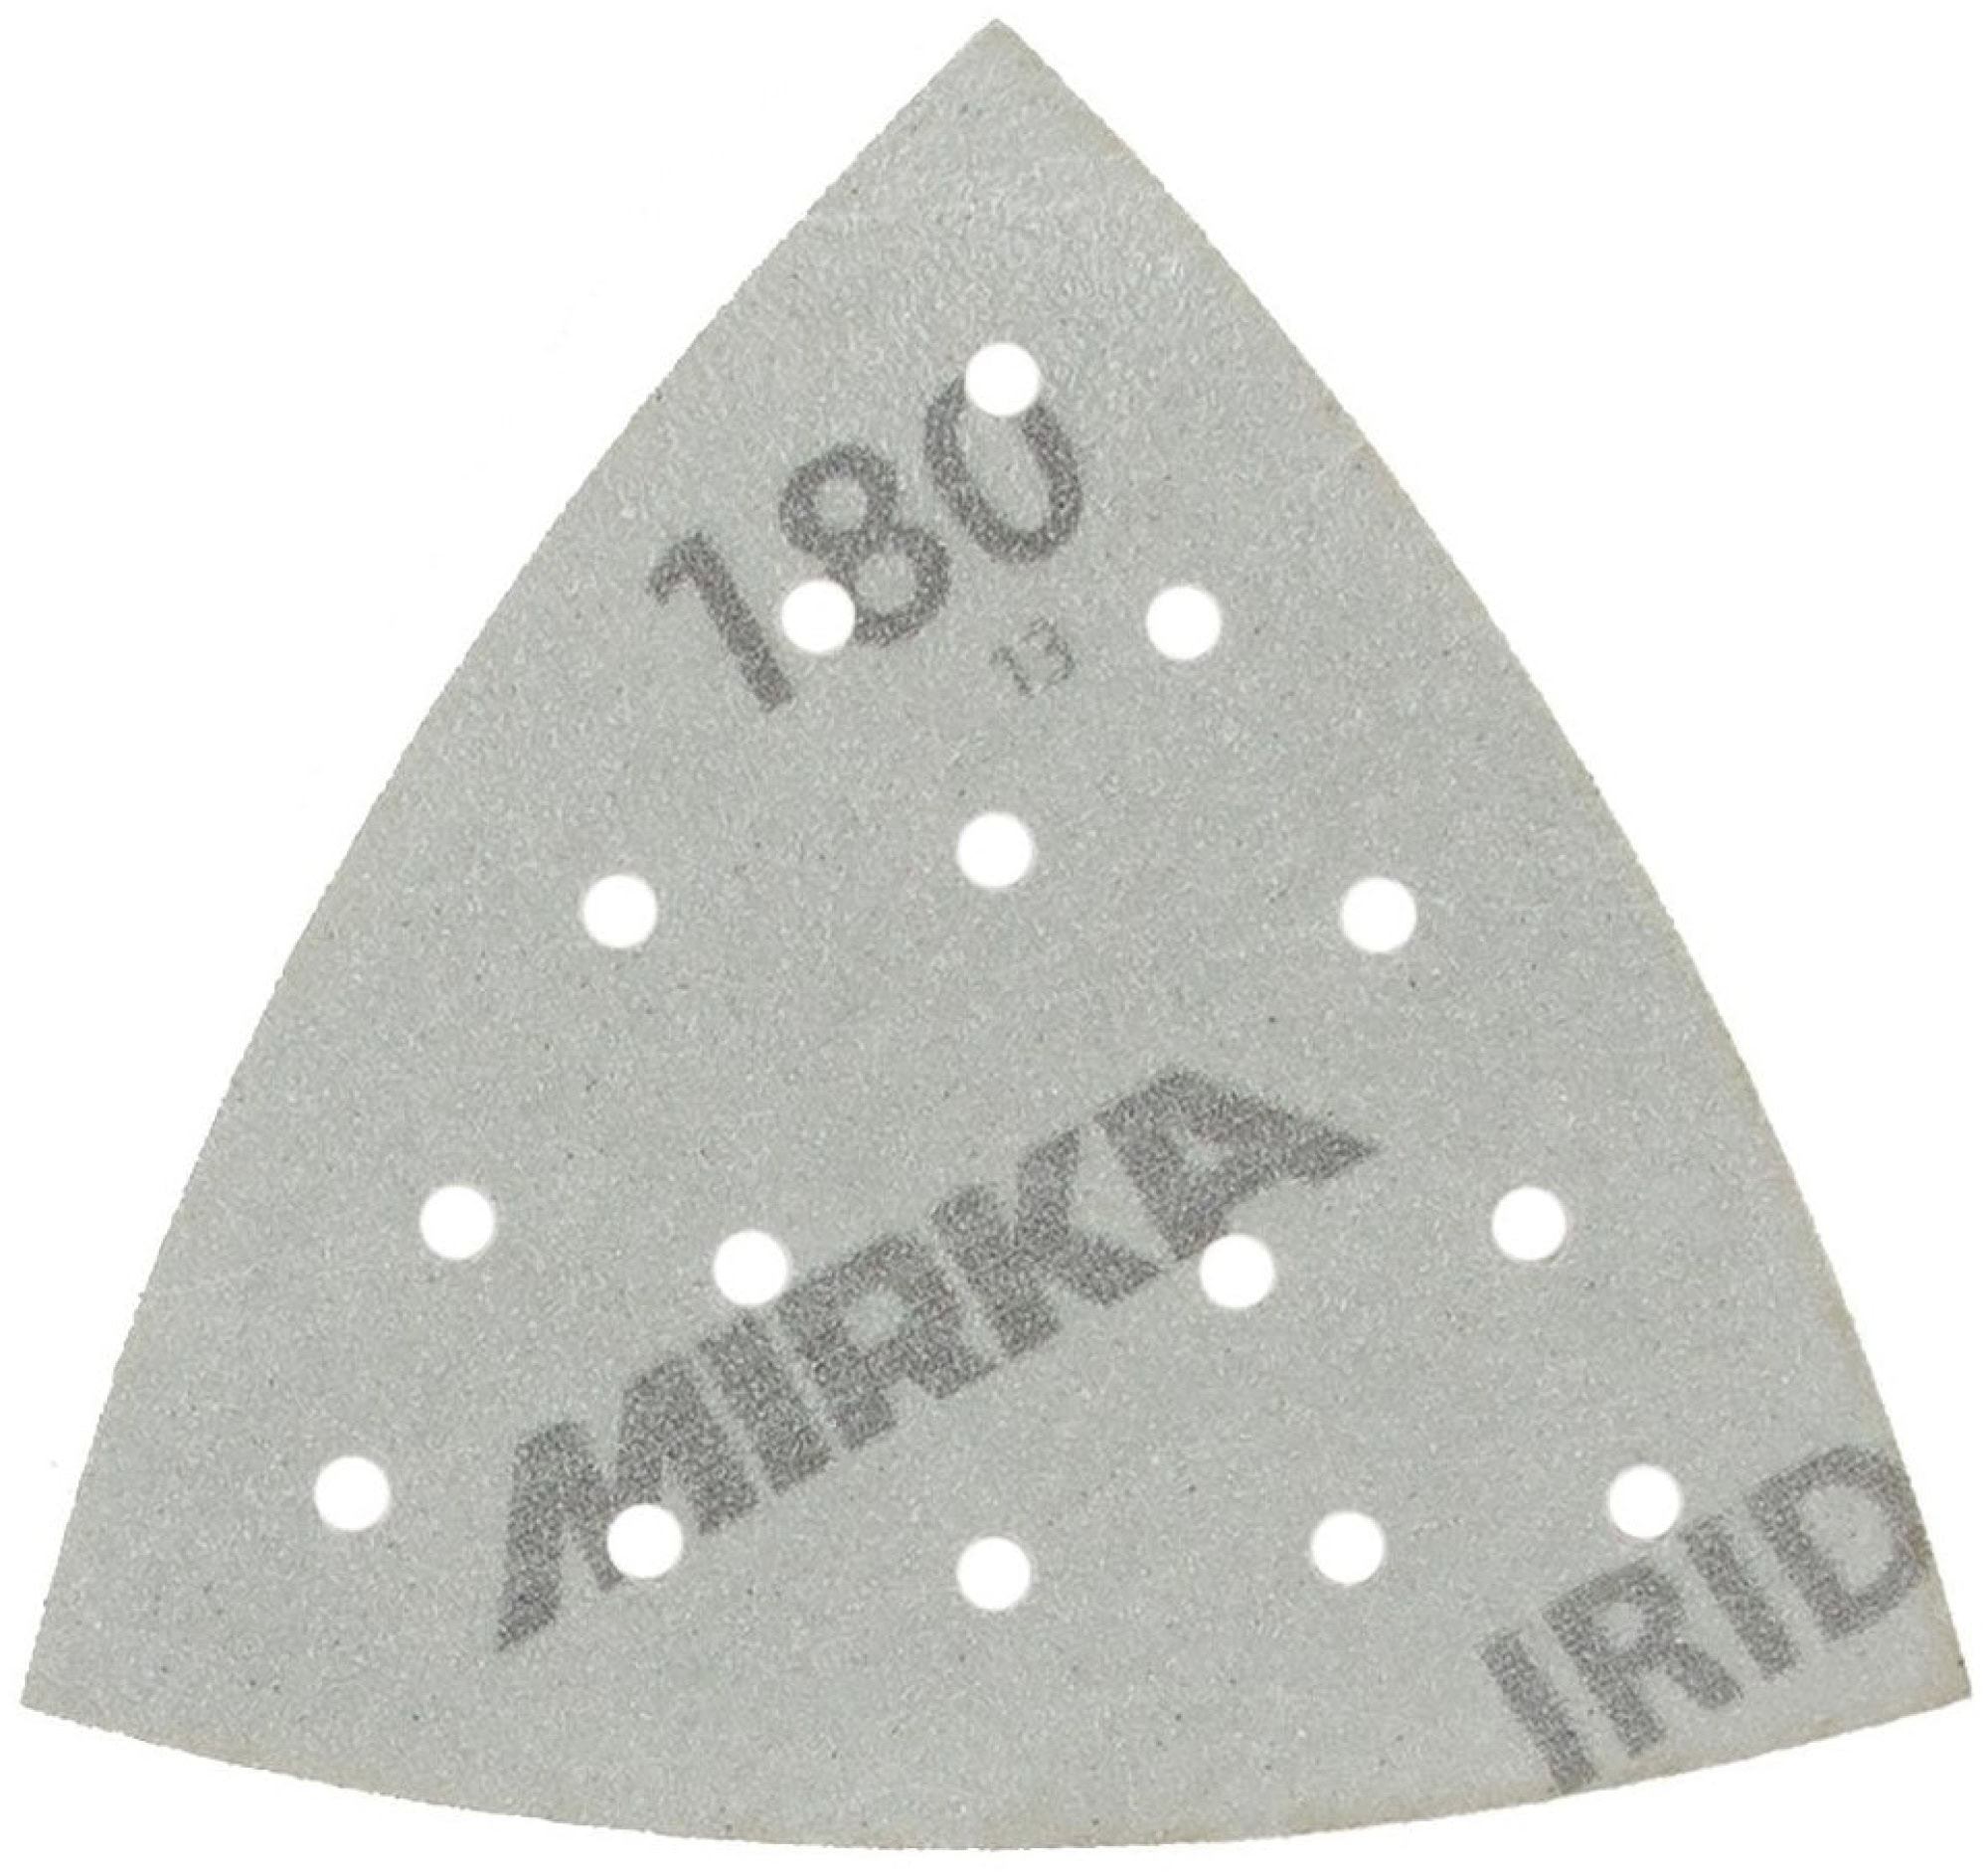 Mirka® Iridium® 246BQ05080, Ø 90 mm x 93 mm x 93 mm, P80, Multilochung, Kletthaftend, Delta Schleifscheibe mit Keramik- und Aluminiumkorn